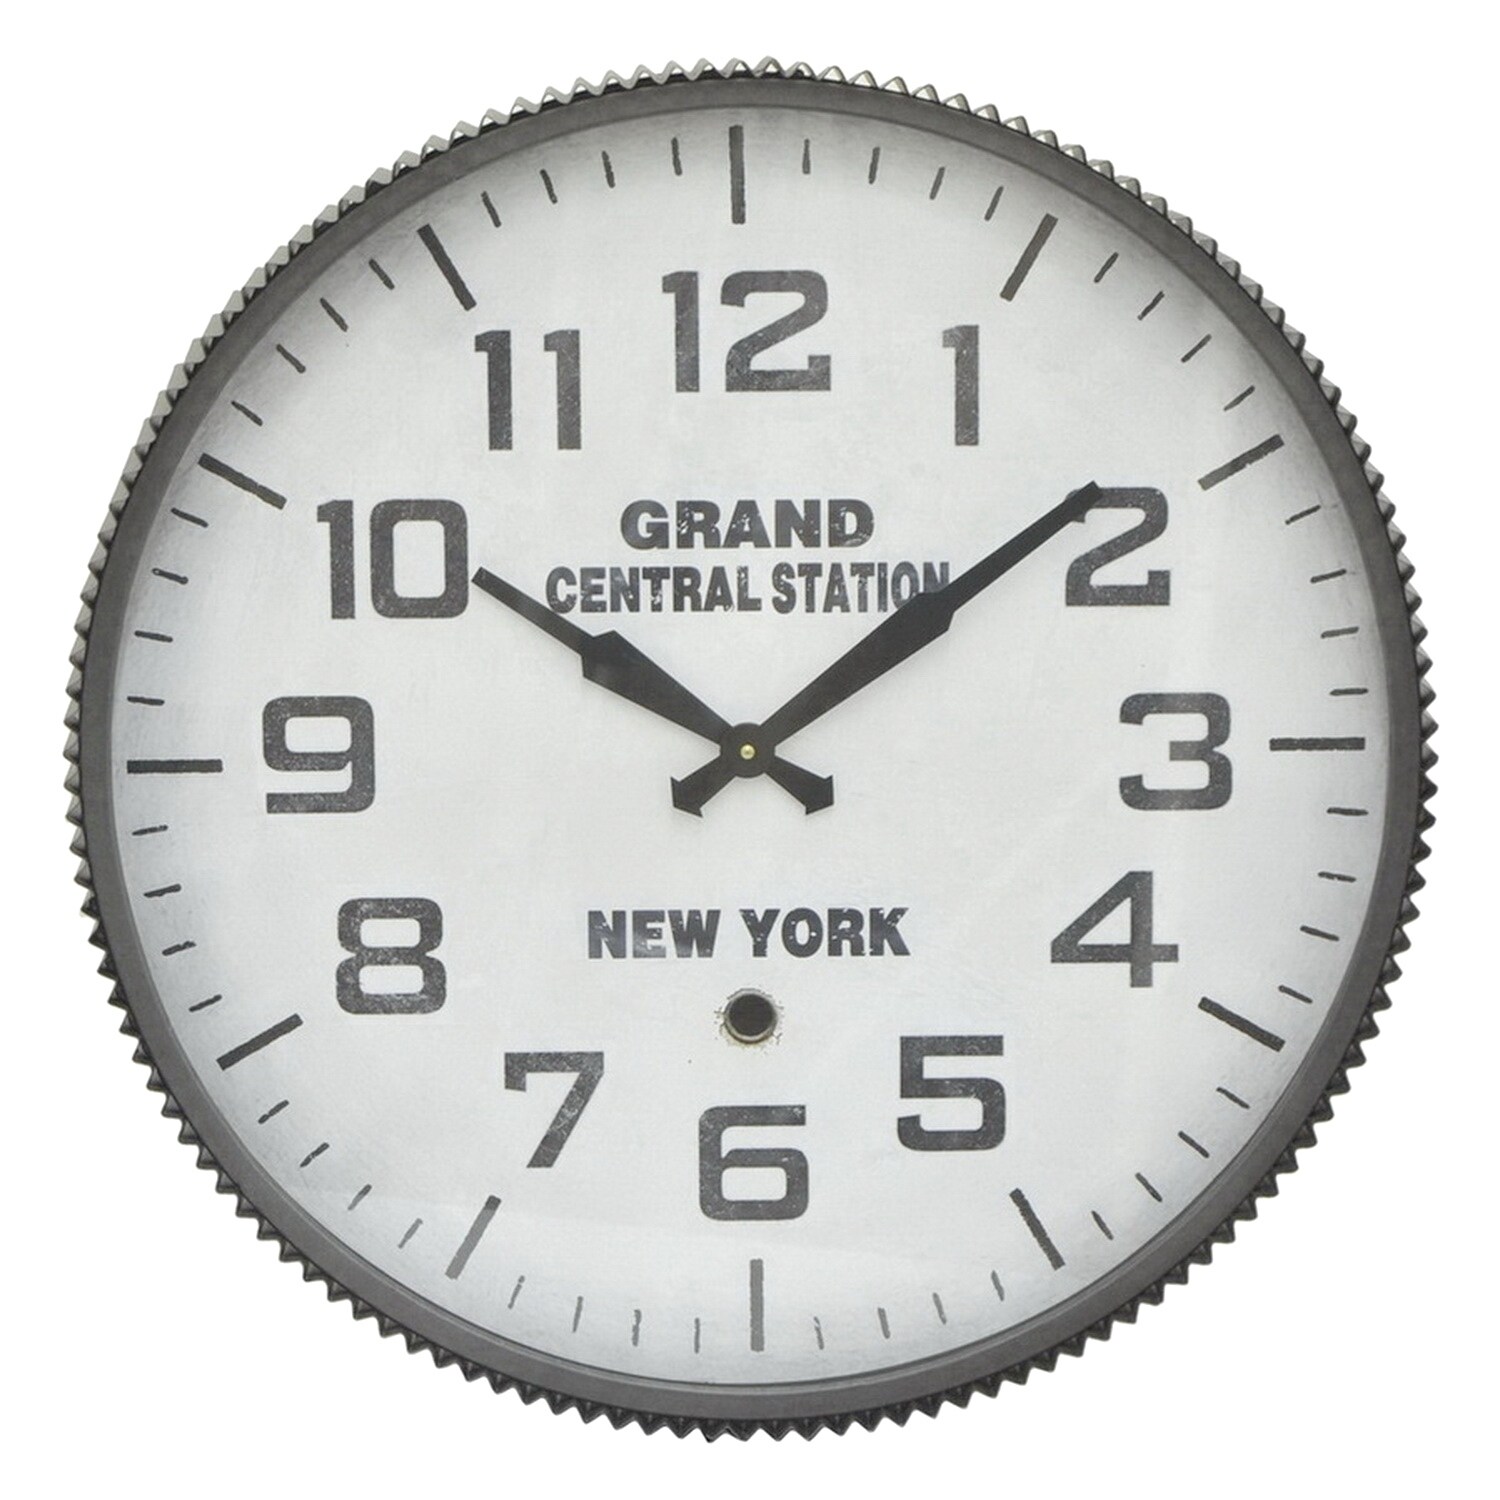 Часы 23 56. Часы 1 минута. Часы Grand Central Terminal NY. Часы машина времени.